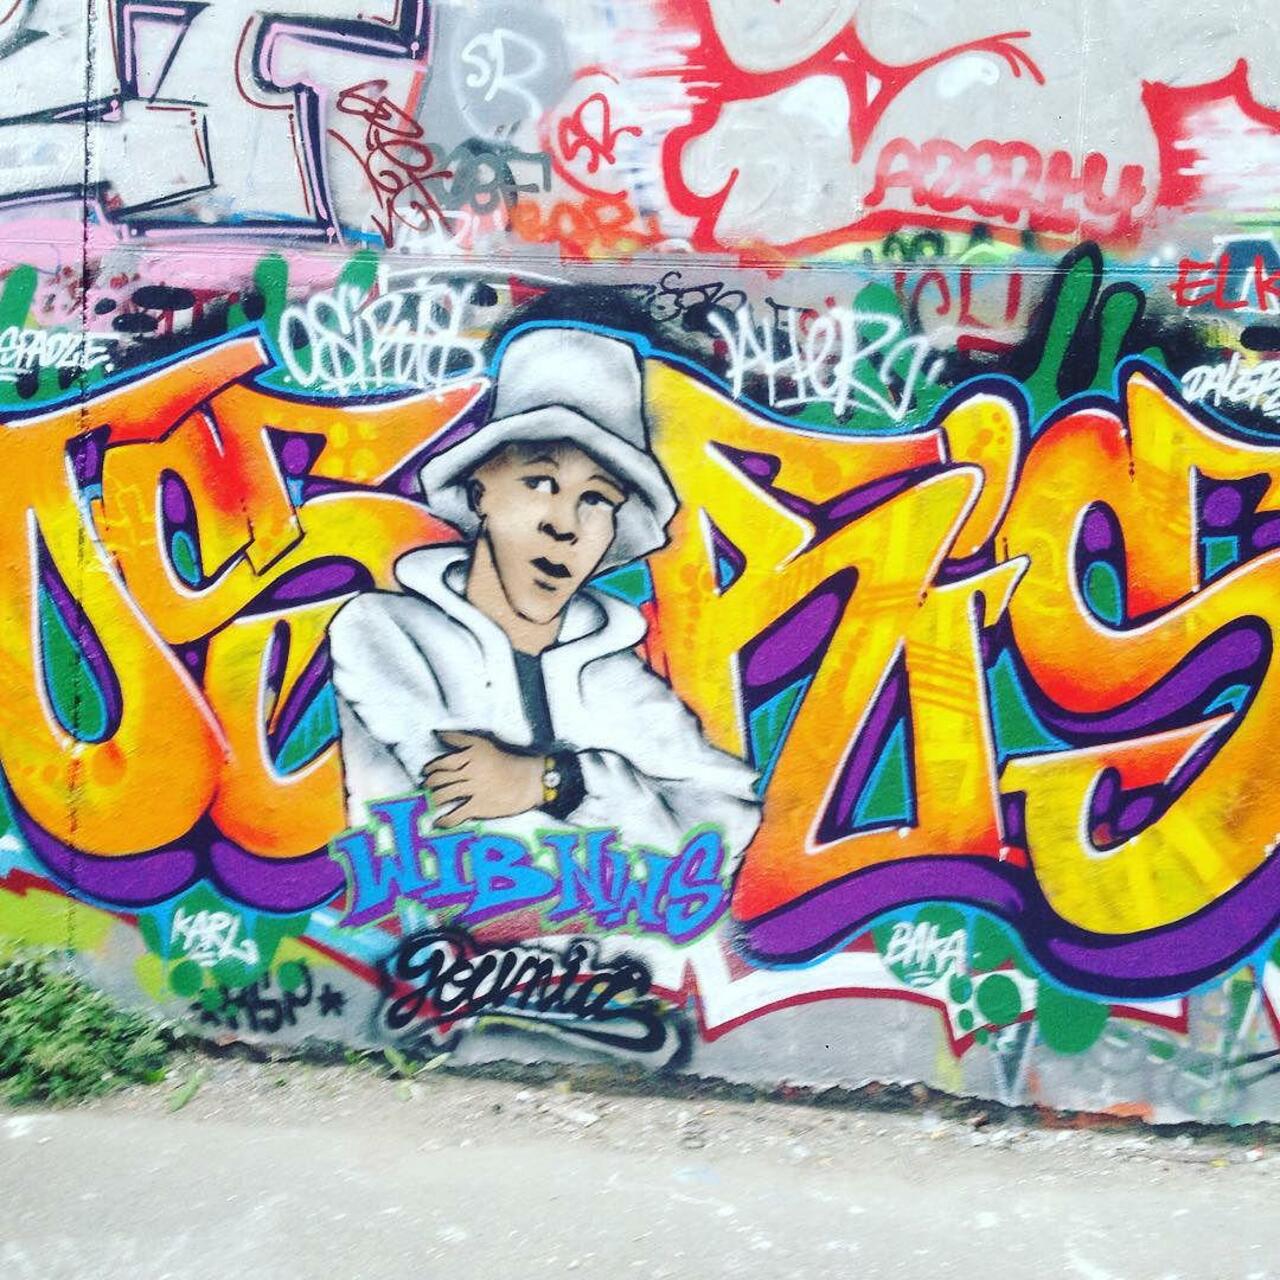 #Paris #graffiti photo by @cibti4987 http://ift.tt/1LK9I4a #StreetArt http://t.co/QxniLoFeyW